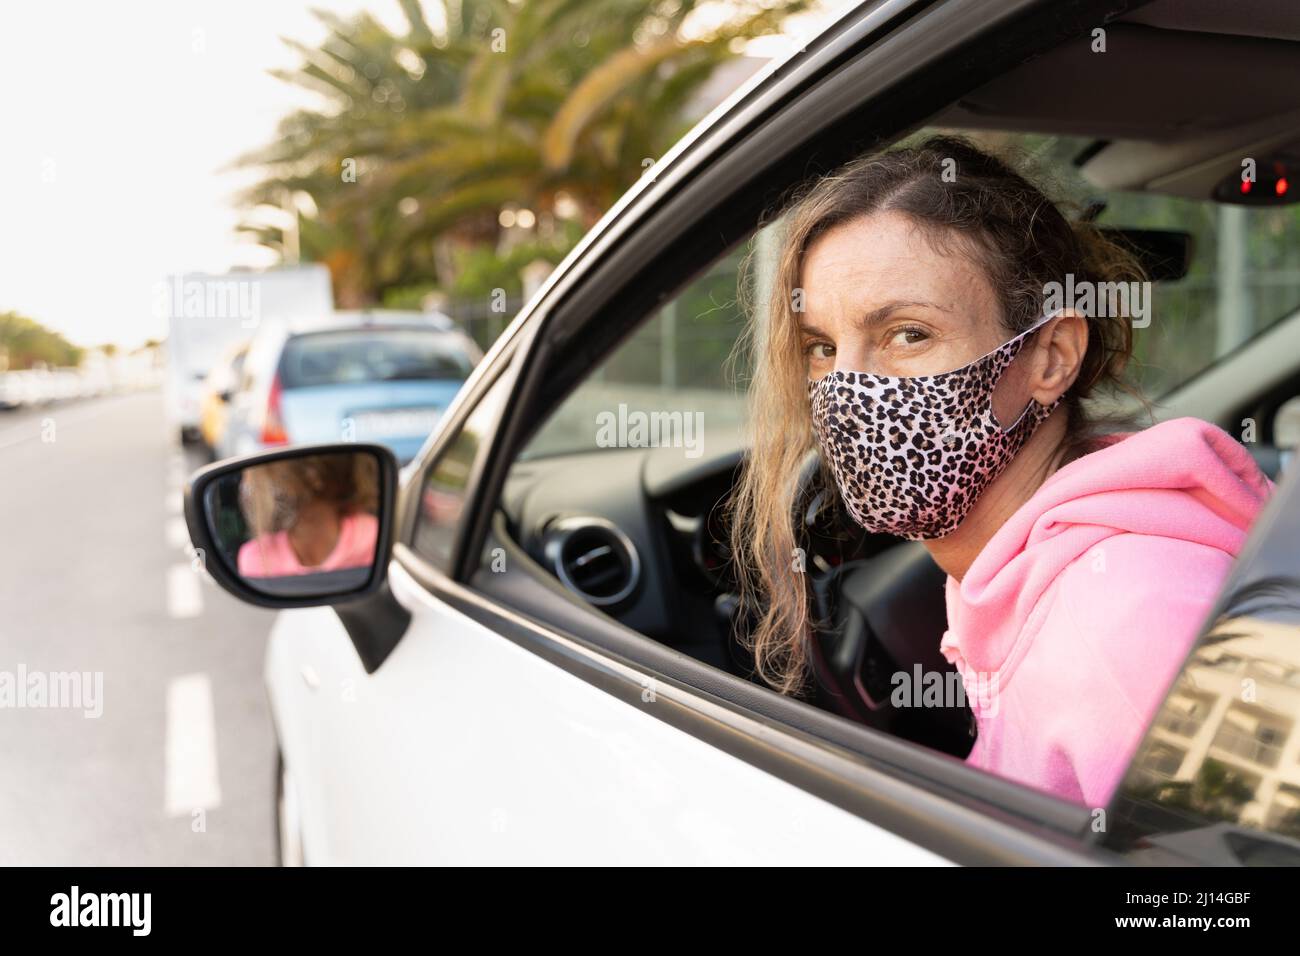 Frau mit Leopardenhaut Gesichtsmaske Blick nach hinten durch Autofenster. Fahrzeugmiete, Sicherheitsmassnahmen Konzepte Stockfoto